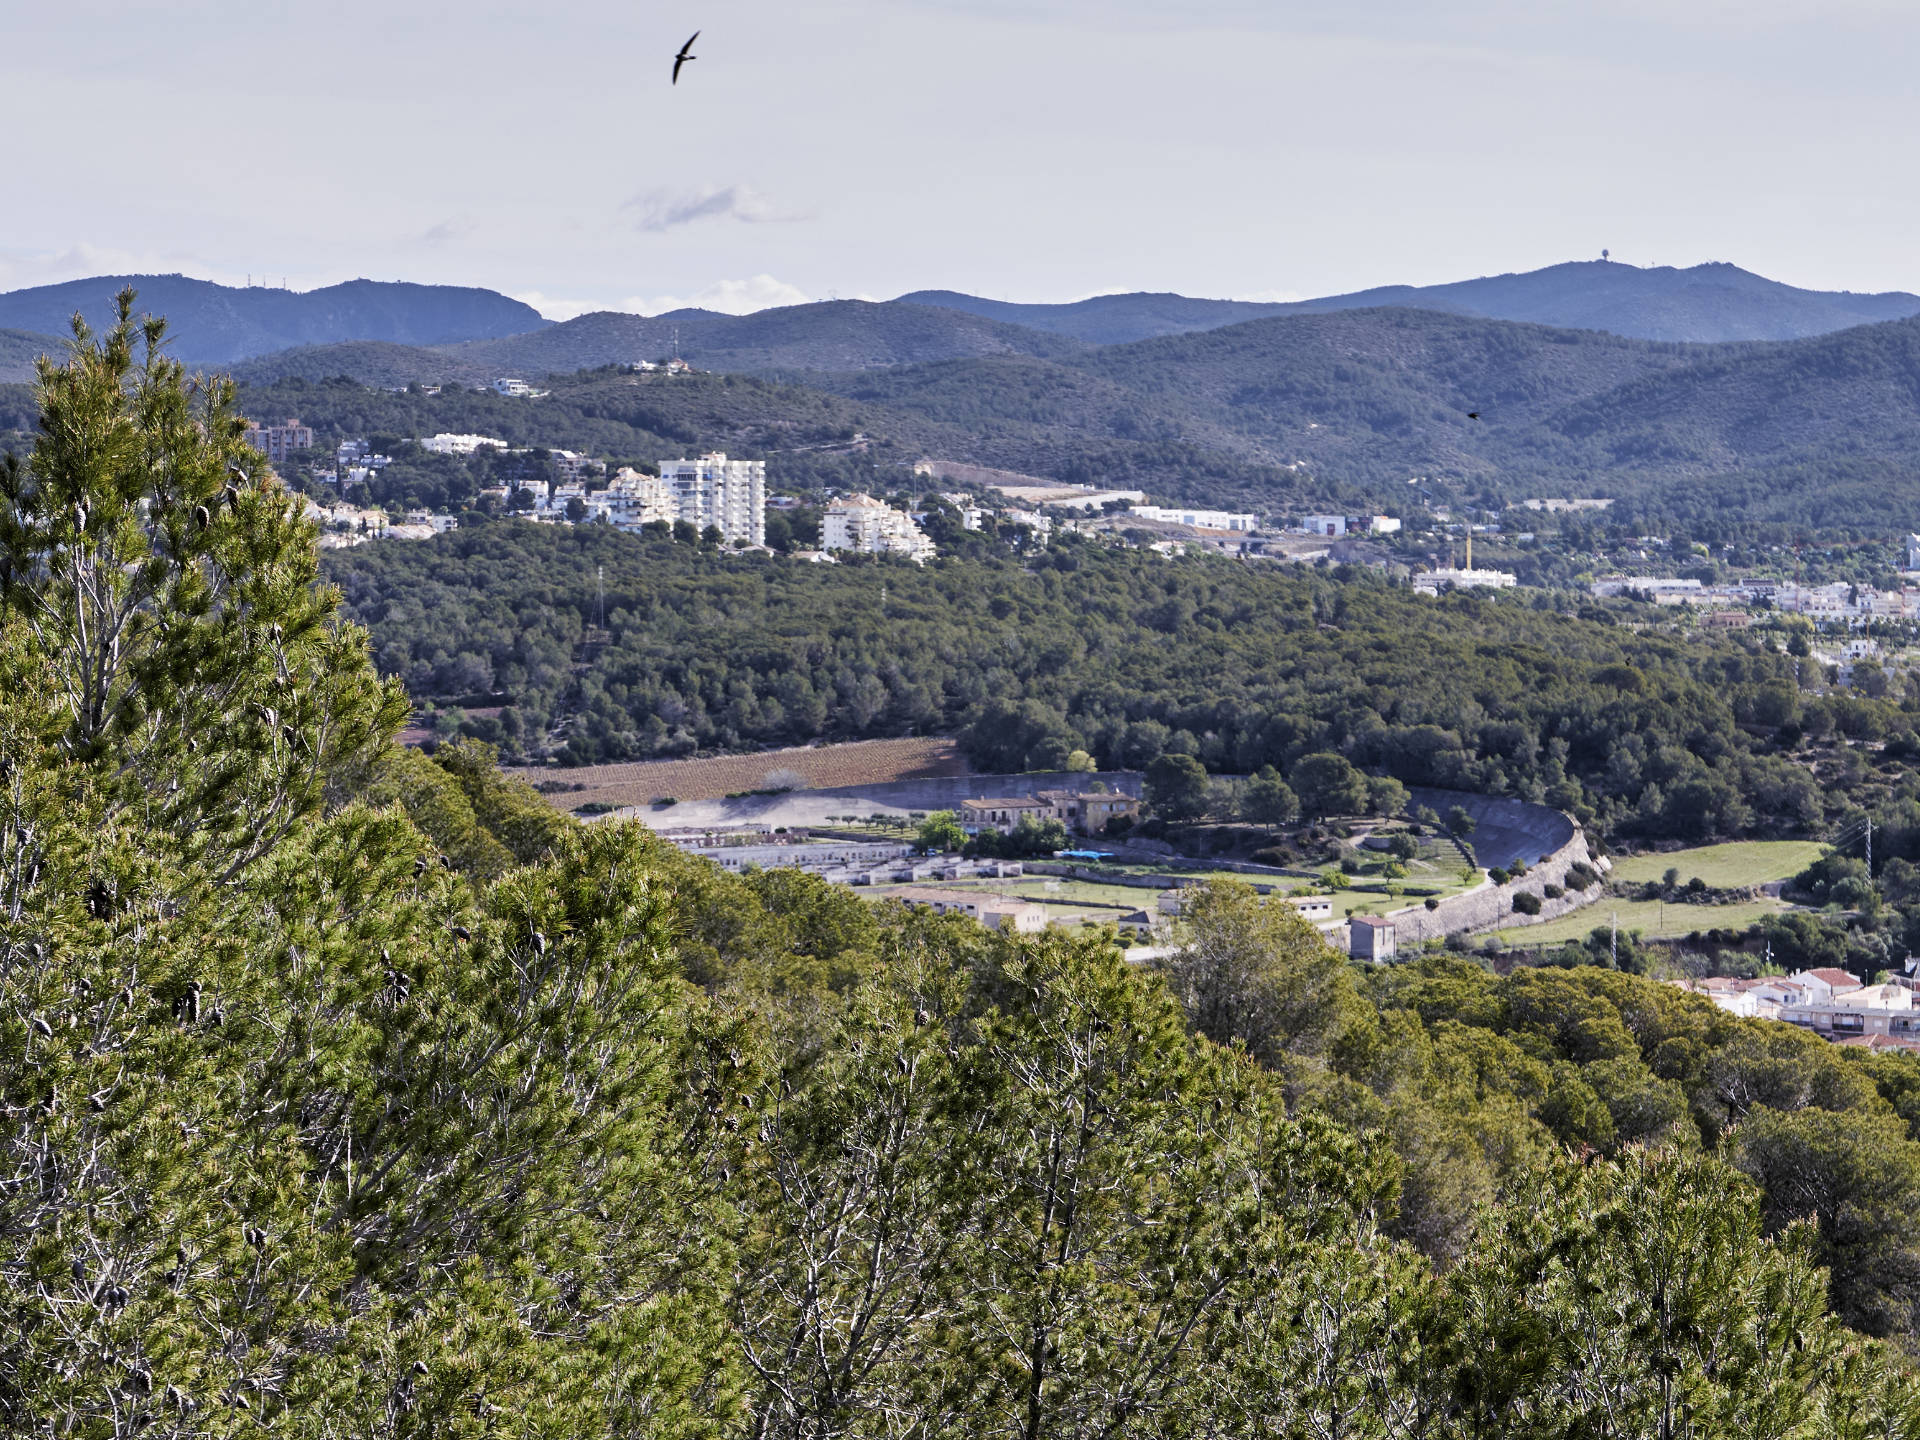 Aussicht vom Santuari de Gràcia auf das Autódromo de Sitges-Terramar.